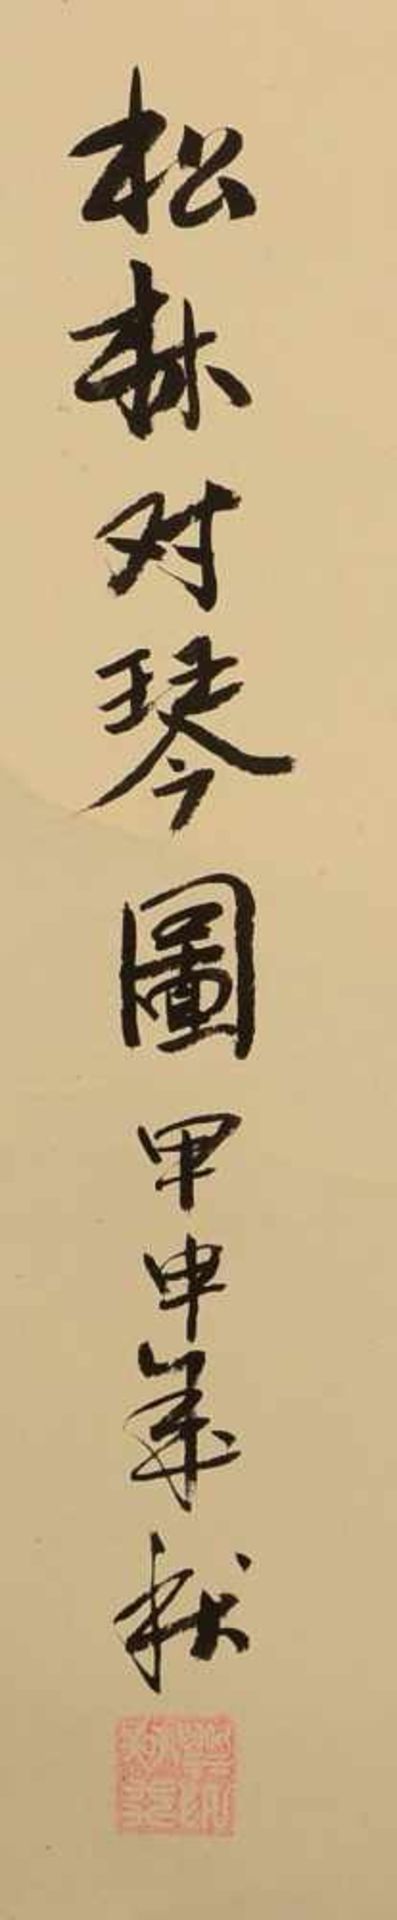 Rollbild, China, 'Personen in Landschaft', signiert und gestempelt; Maße 120 x 60 cm - Bild 2 aus 2